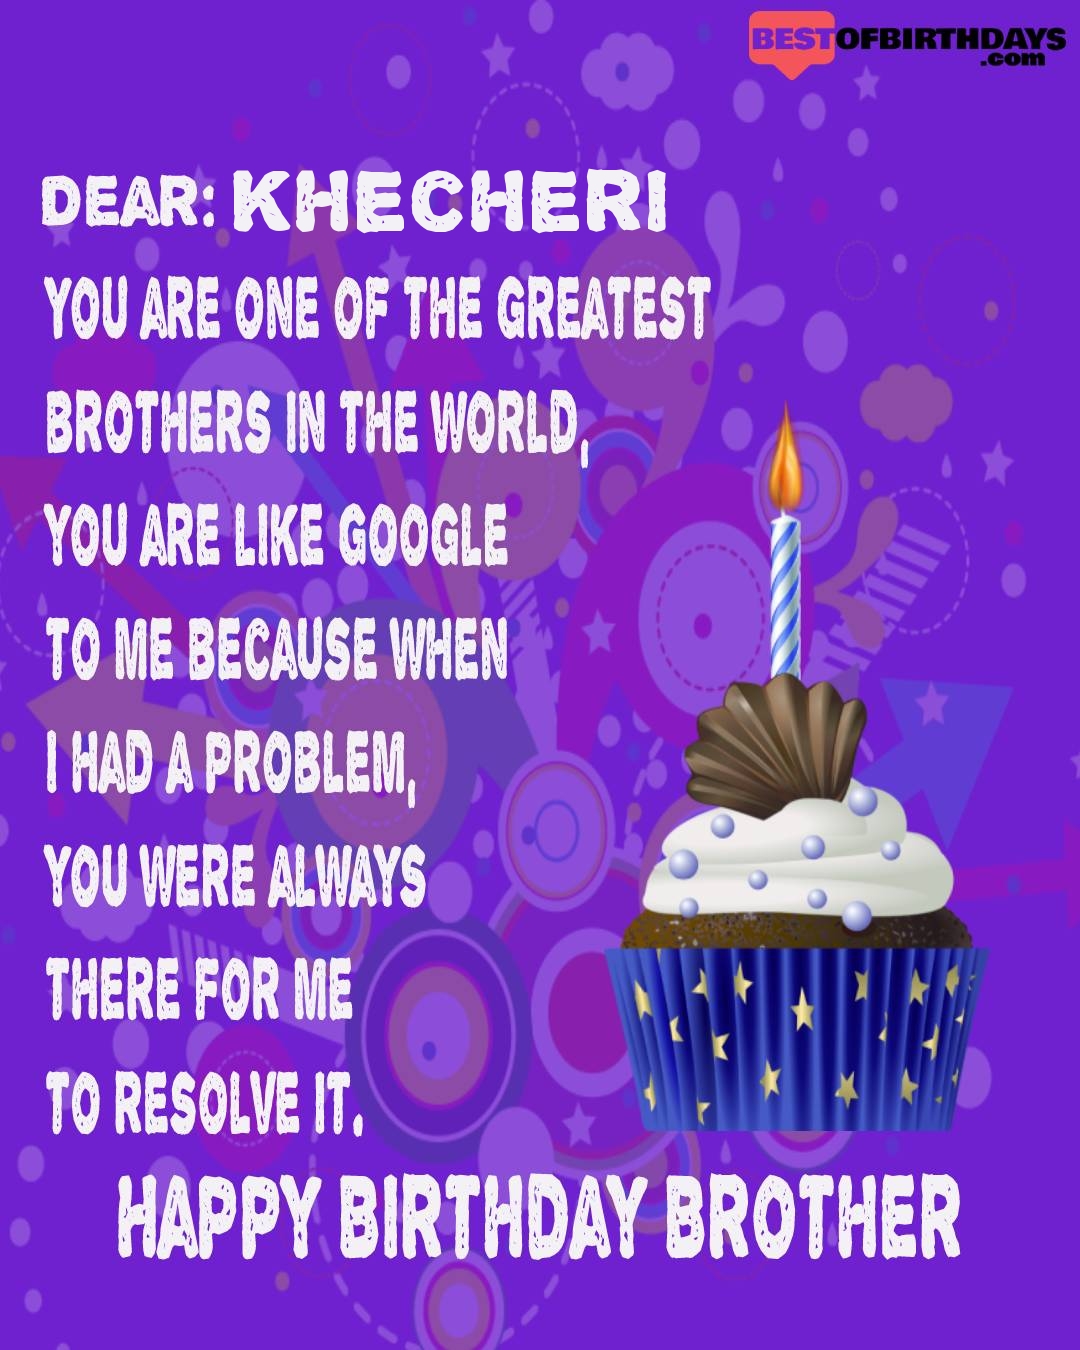 Happy birthday khecheri bhai brother bro